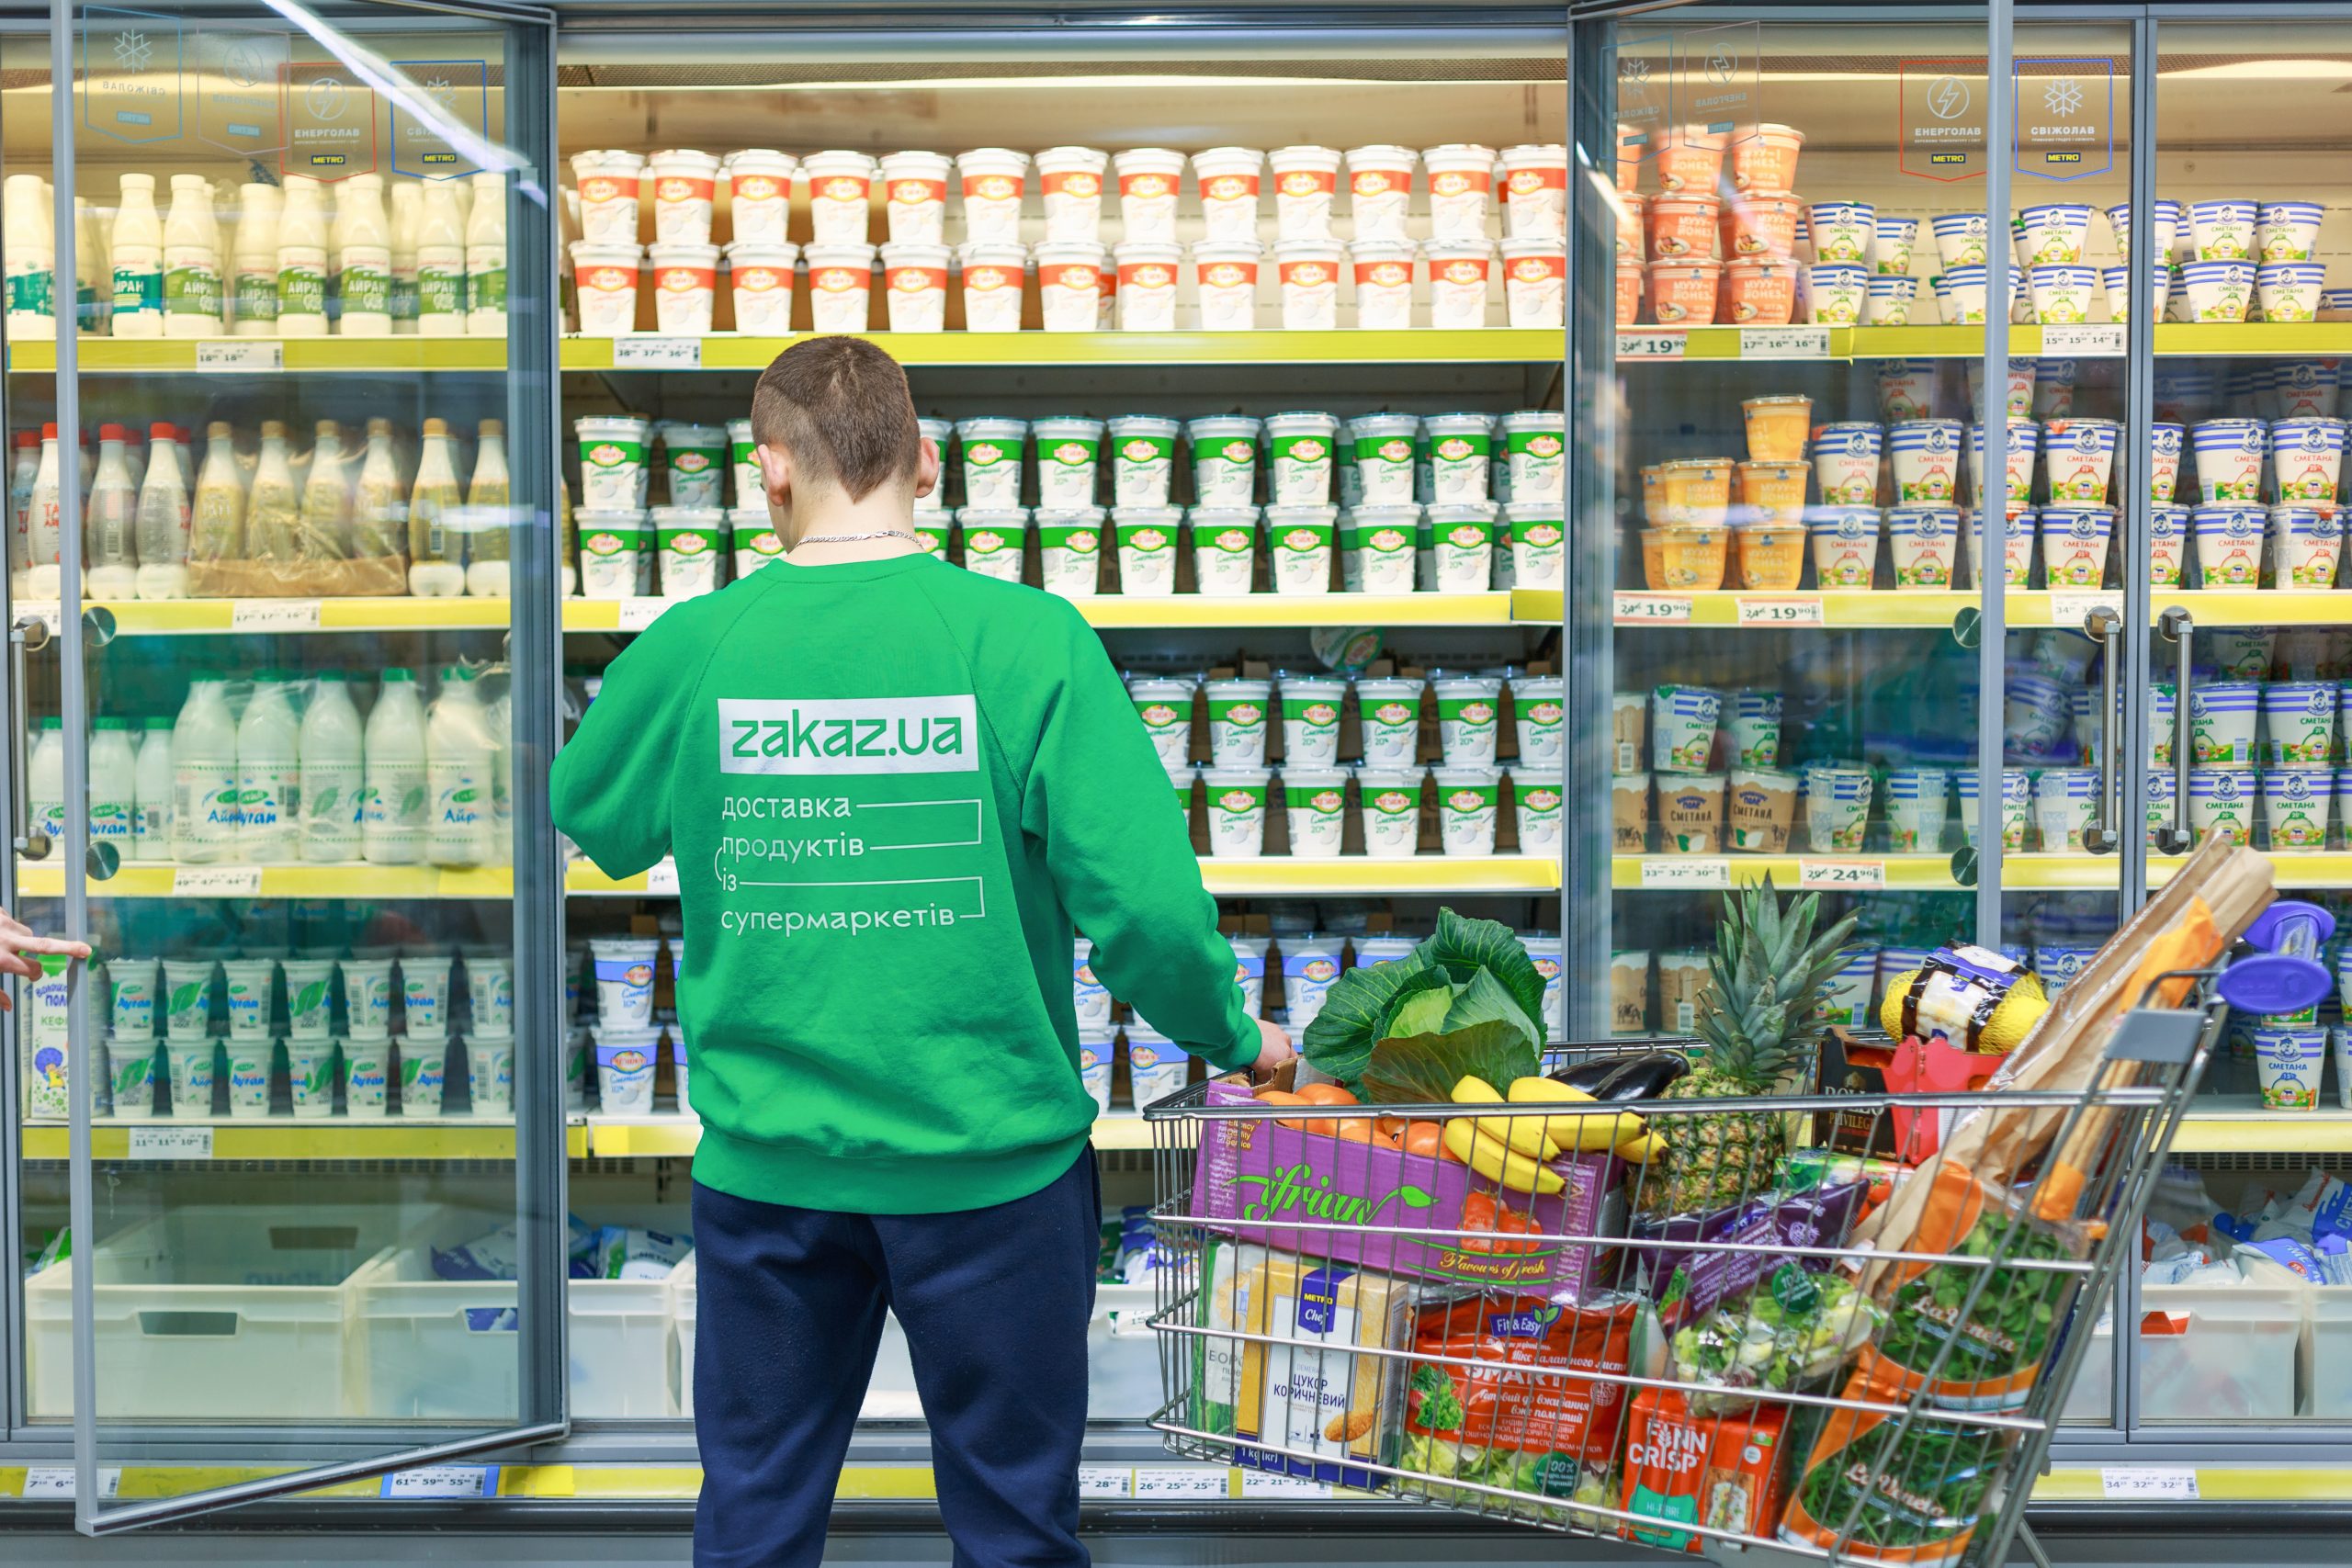 Glovo acquires Ukrainian grocery delivery Zakaz.ua